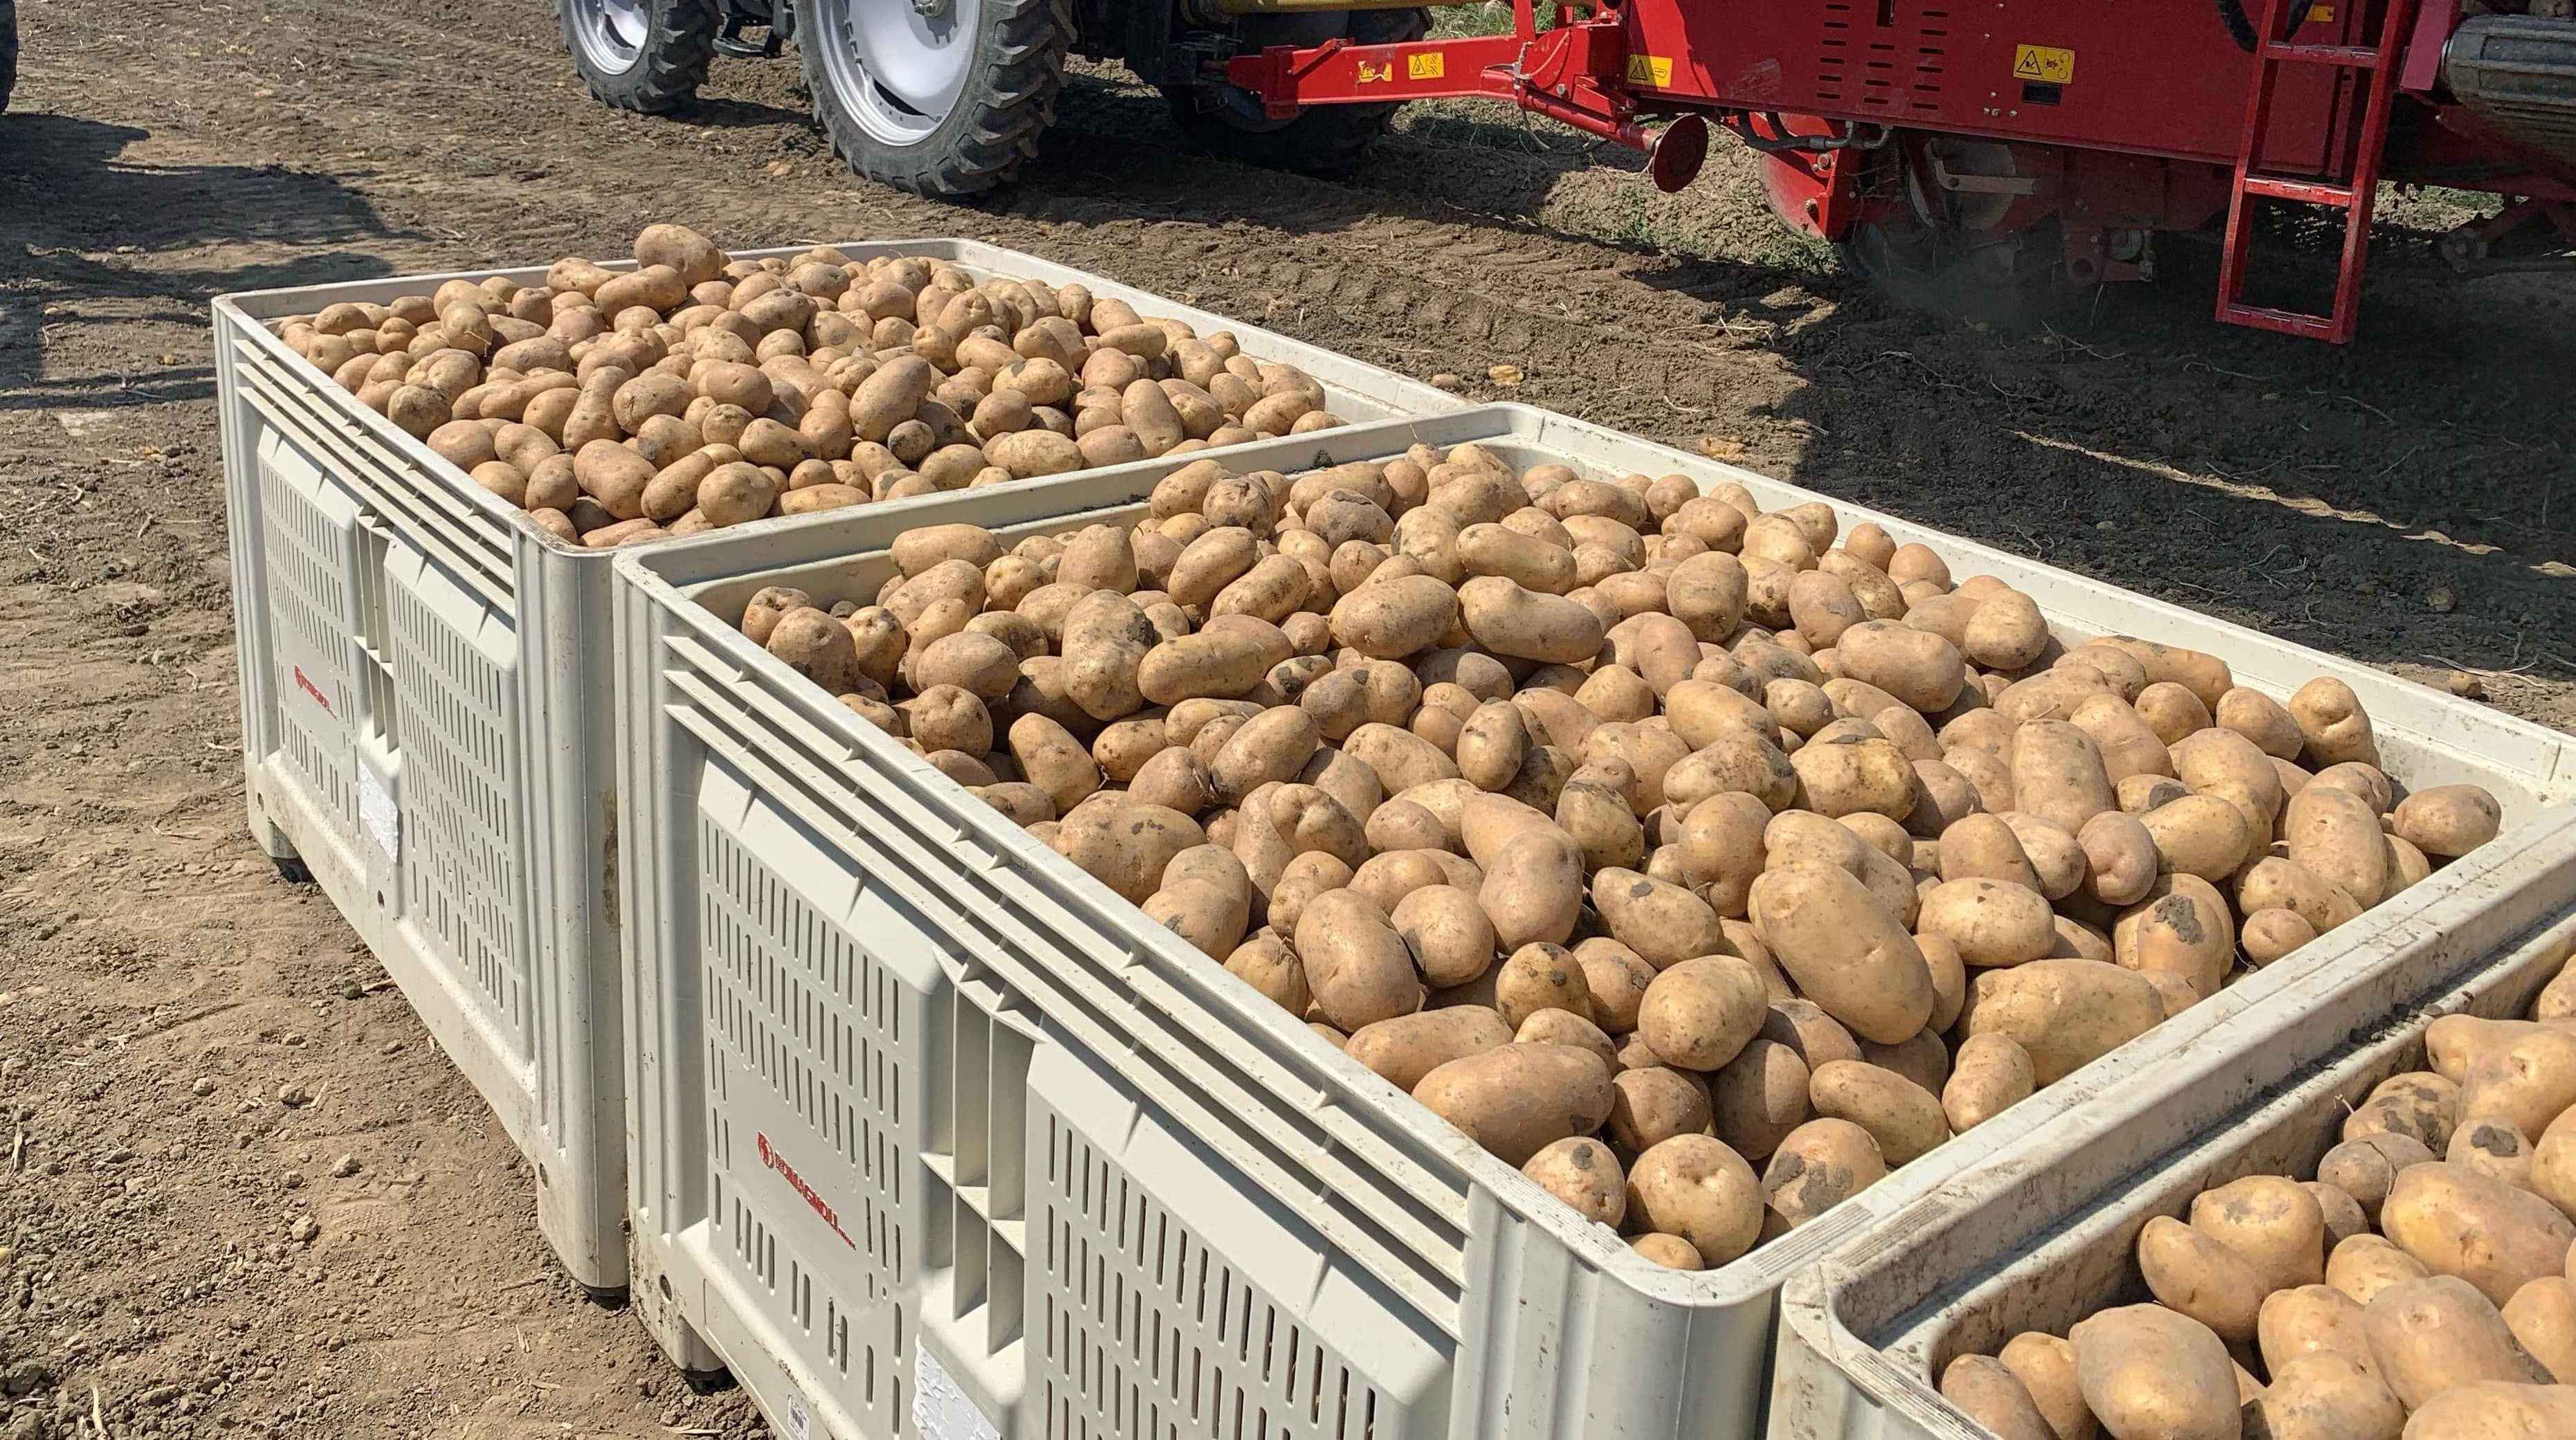 Annata positiva per le patate dell’Emilia-Romagna, modello per la filiera italiana